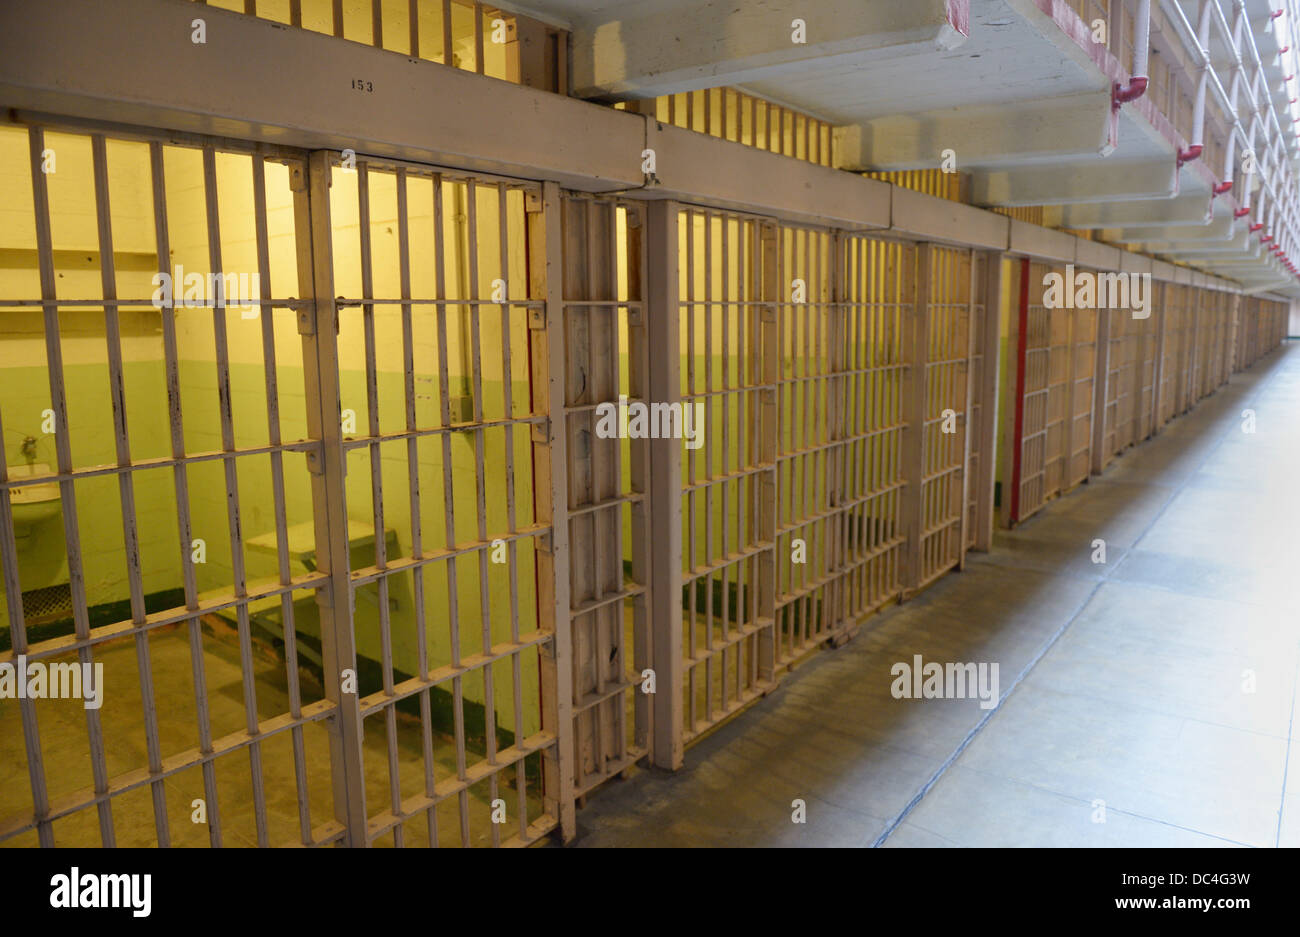 Alcatraz Penitentiary prison cells Stock Photo